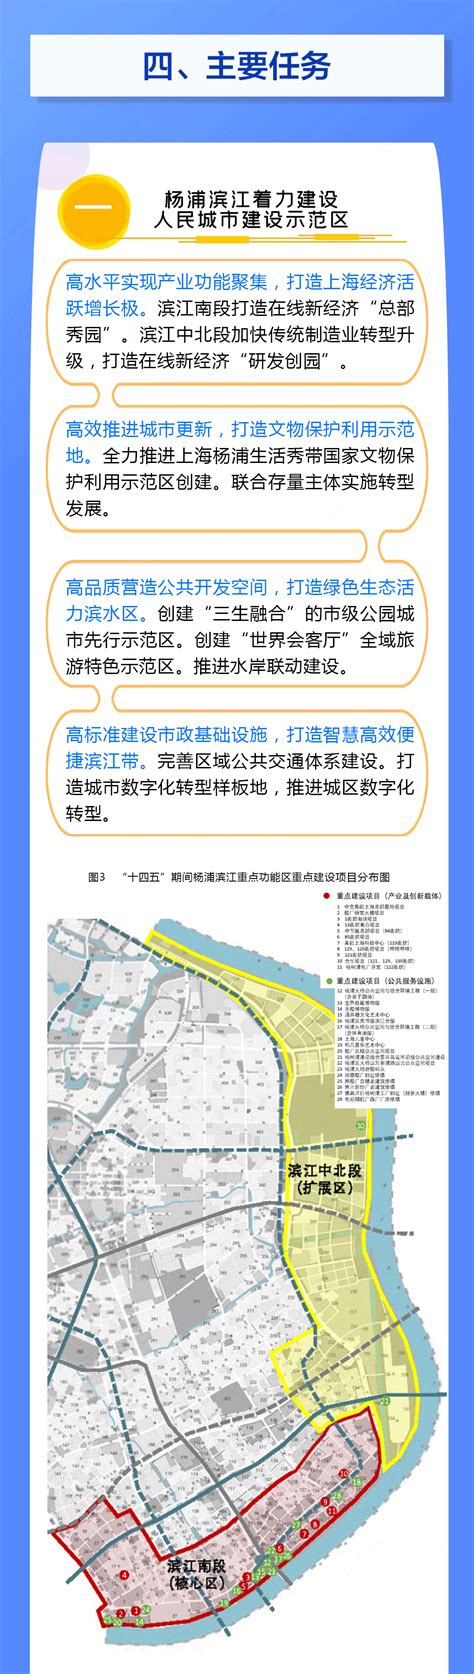 互联宝地·上海“互联网+”产业园揭牌_上海市杨浦区人民政府